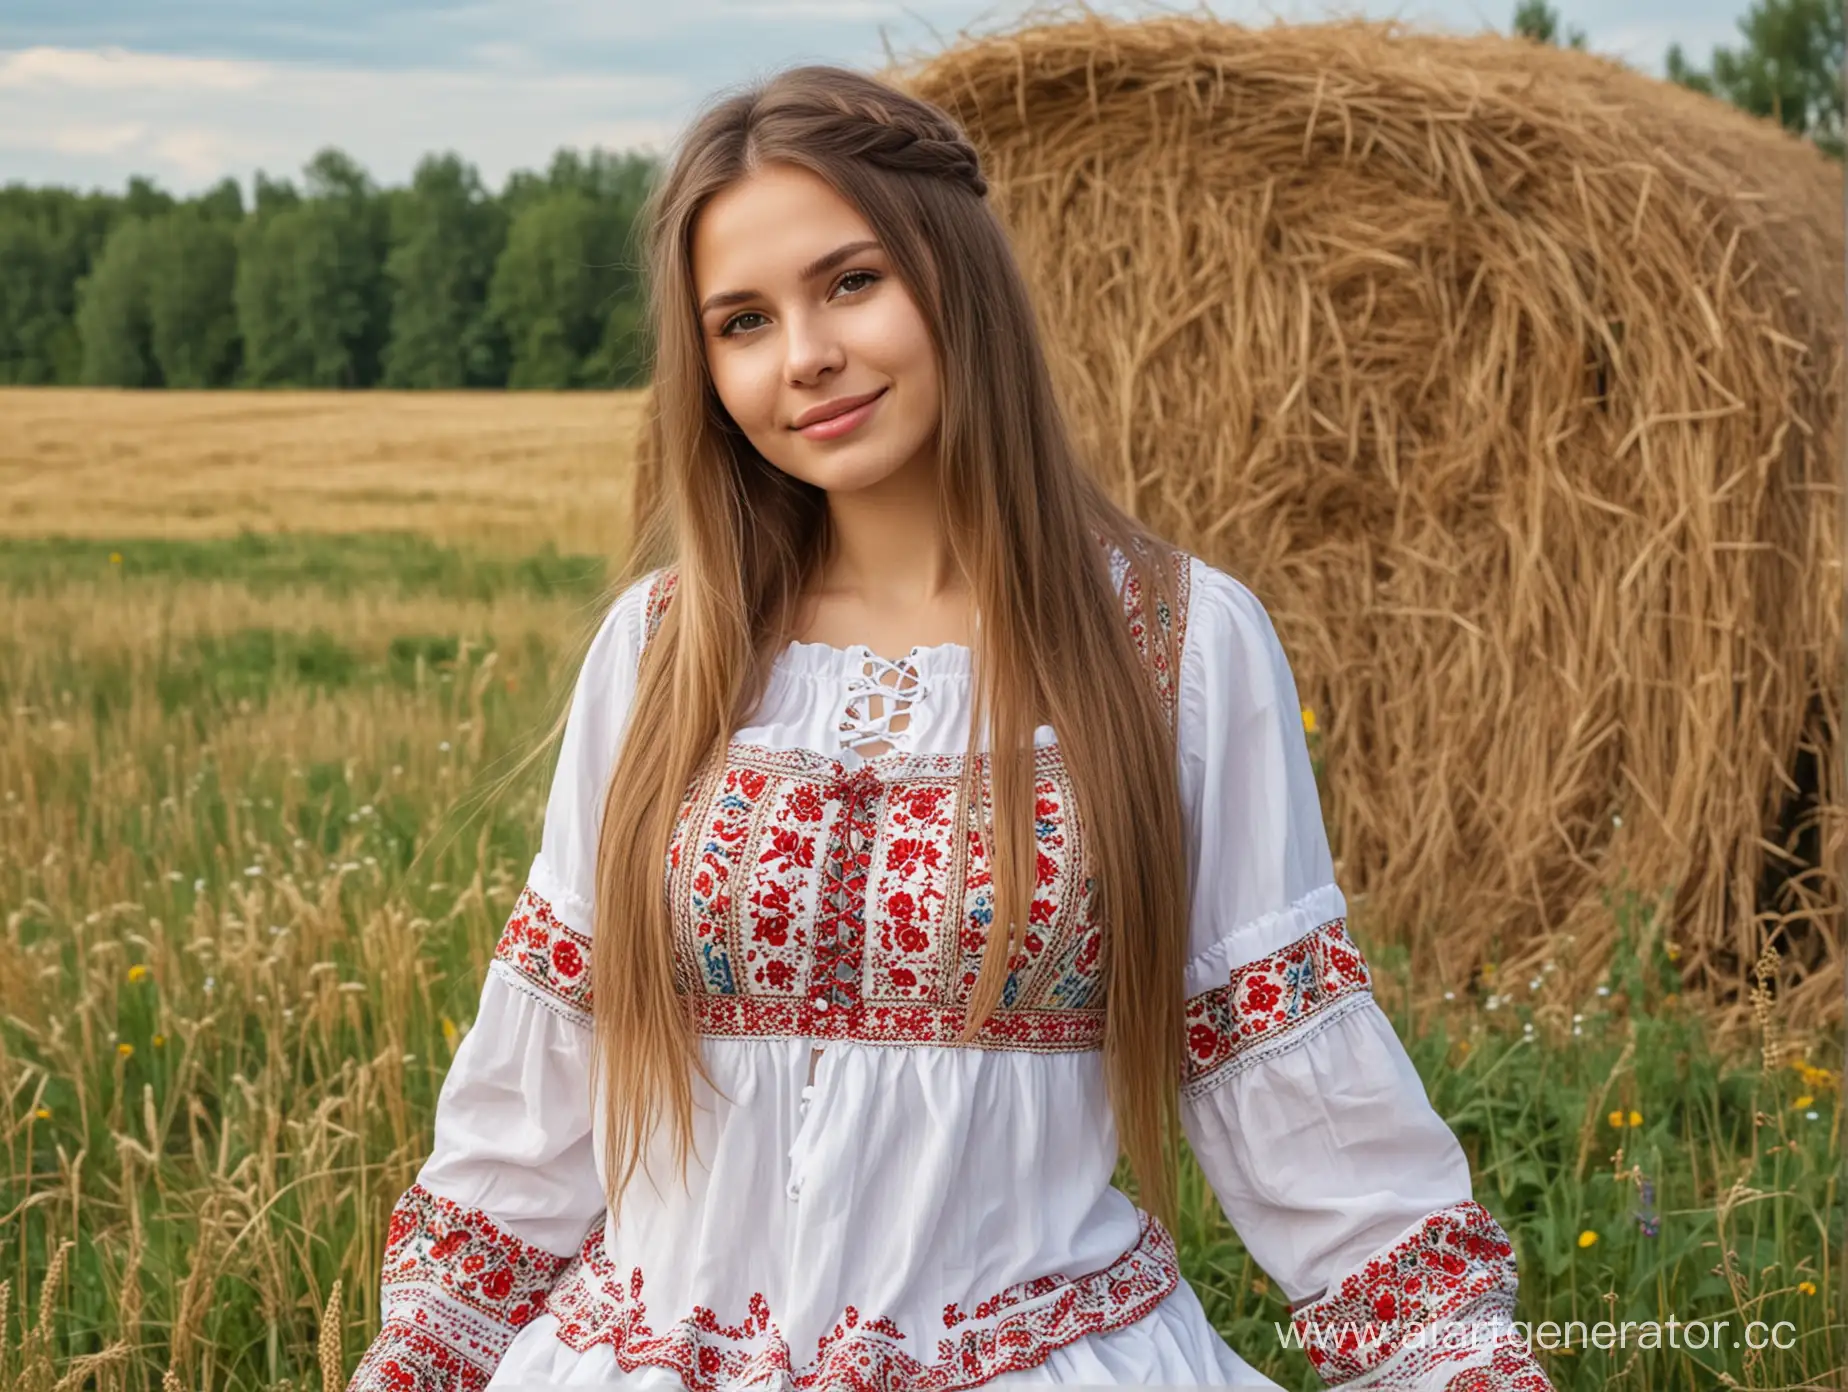 Русская сексуальная полная девушка,улыбается веснушки на лице,светлые длинные волосы, с большой грудью,в сексуальном народном костюме, позирует на лугу возле сена